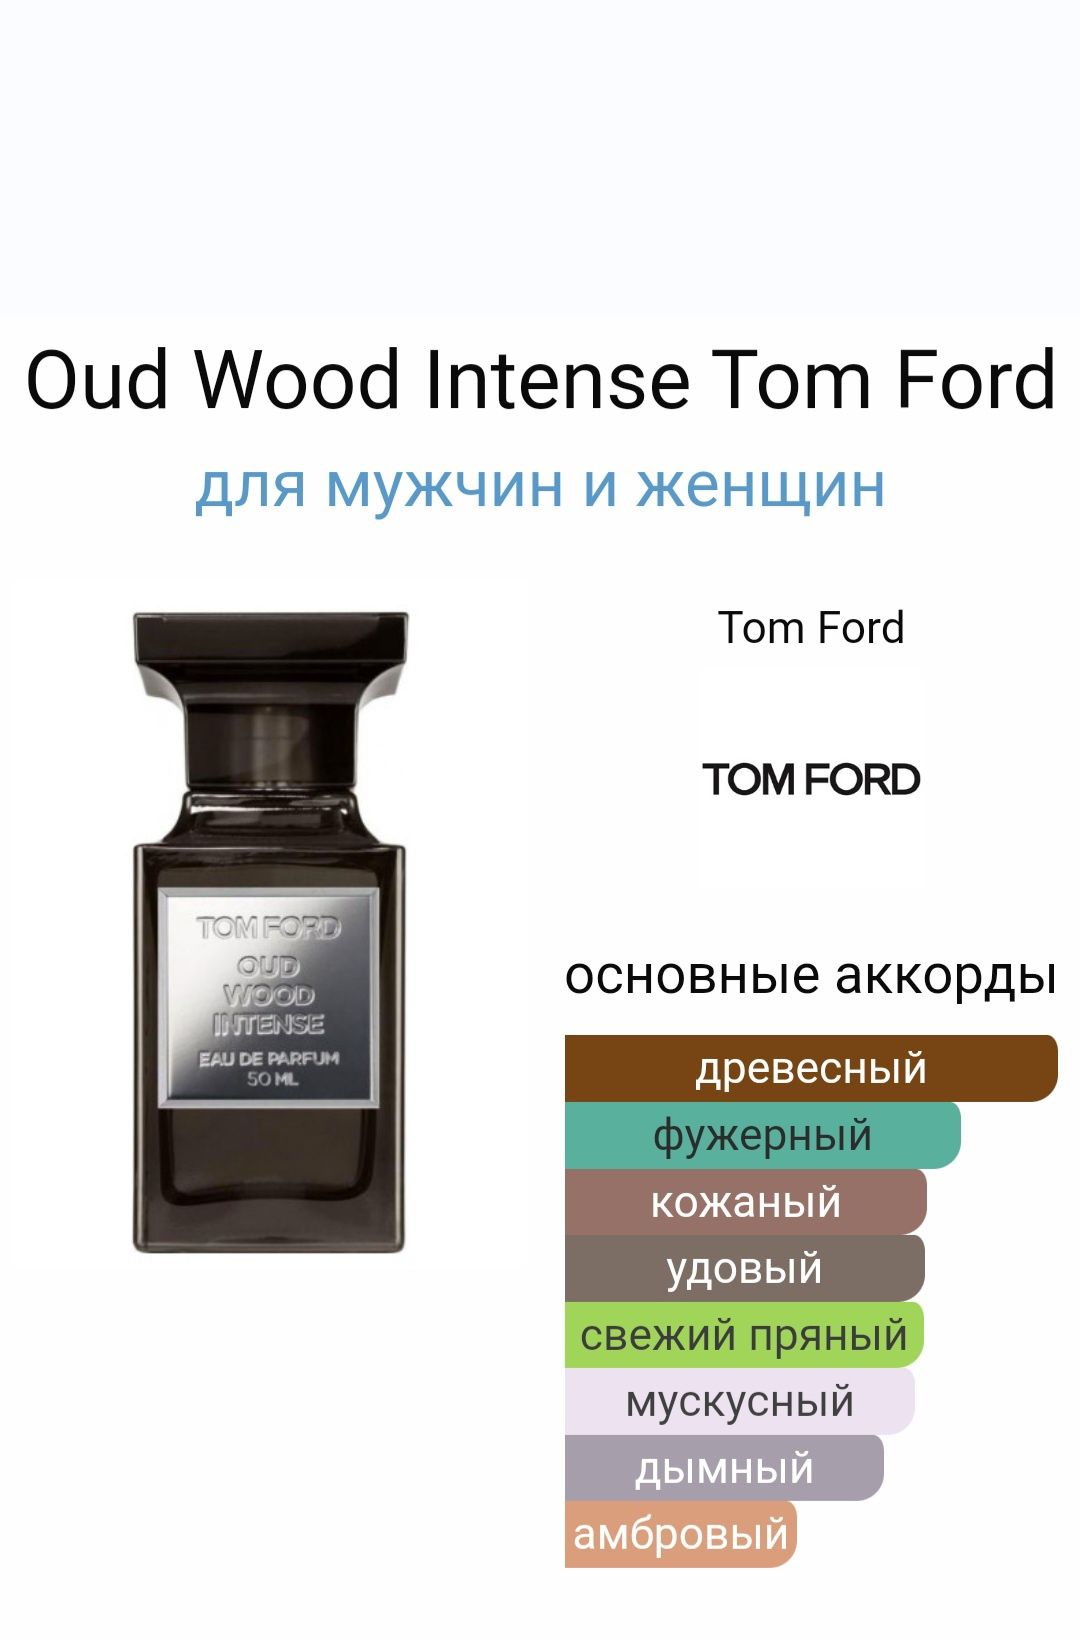 Oud Wood Intense Tom Ford для чоловіків  і жінок  розлив від 3 мл